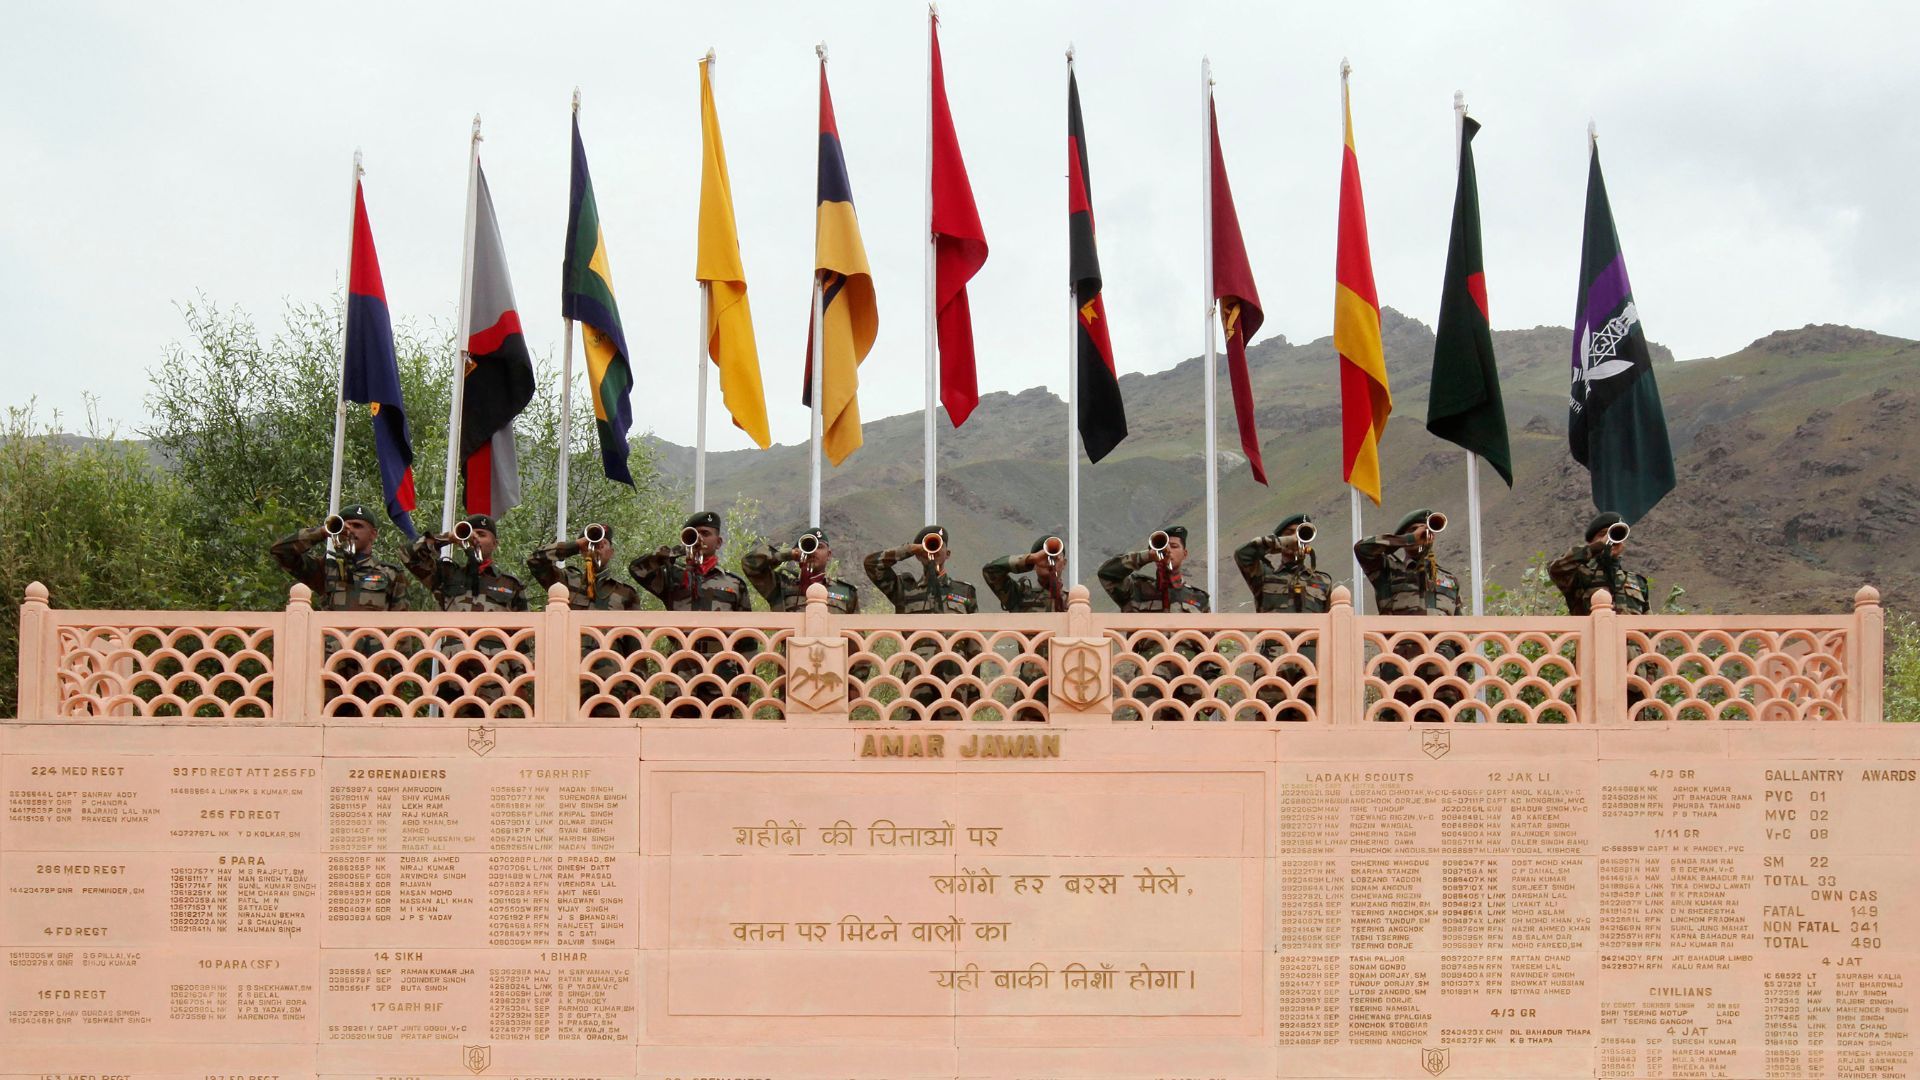 War memorials of India: Kargil War Memorial